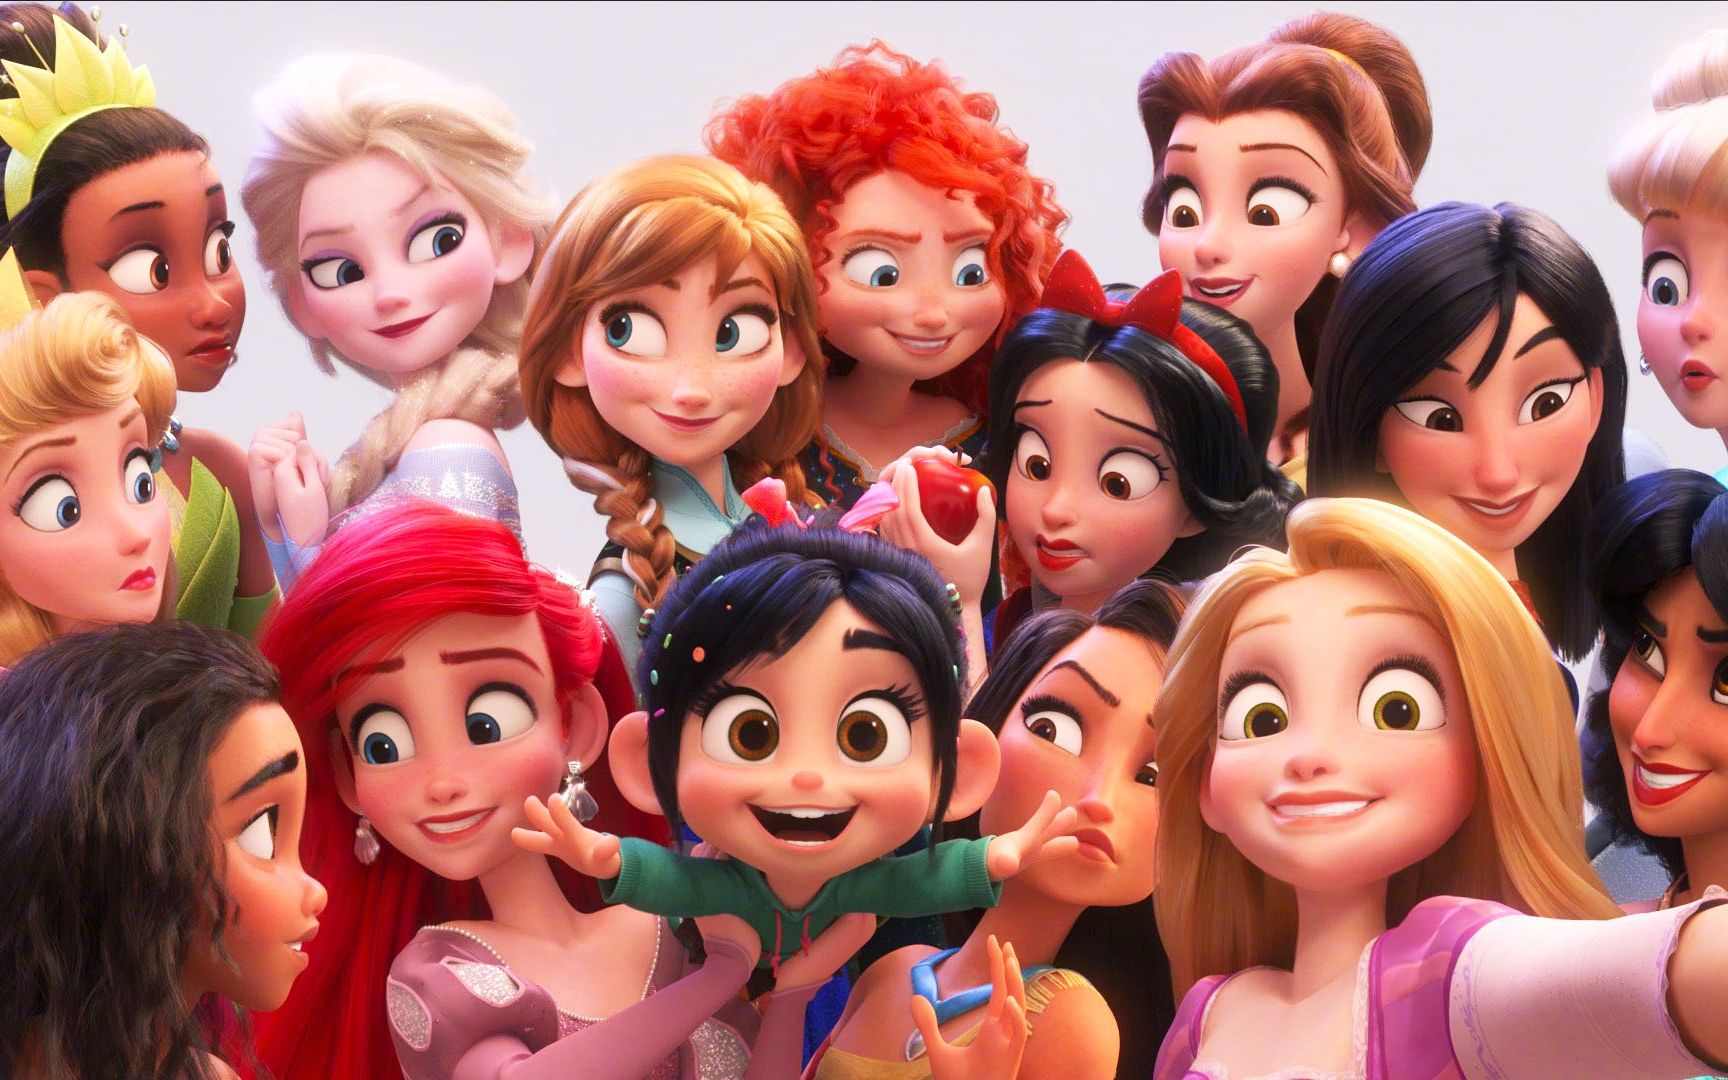 15位迪士尼公主一起自拍,美貌大比拼,第一名果然是冰雪女王艾莎!